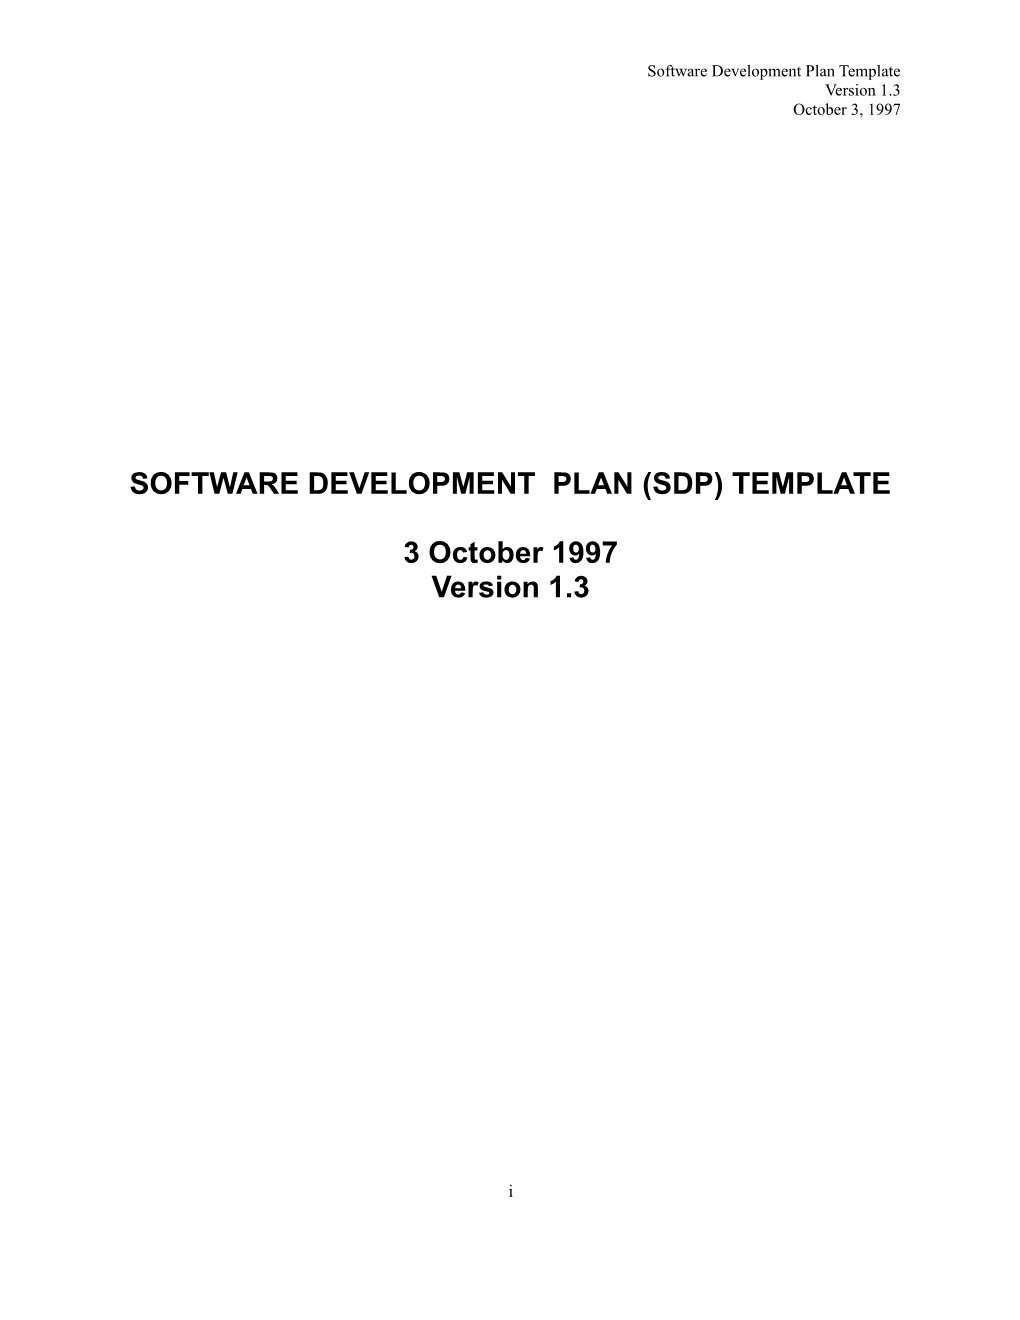 Software Development Plan (Sdp) Template